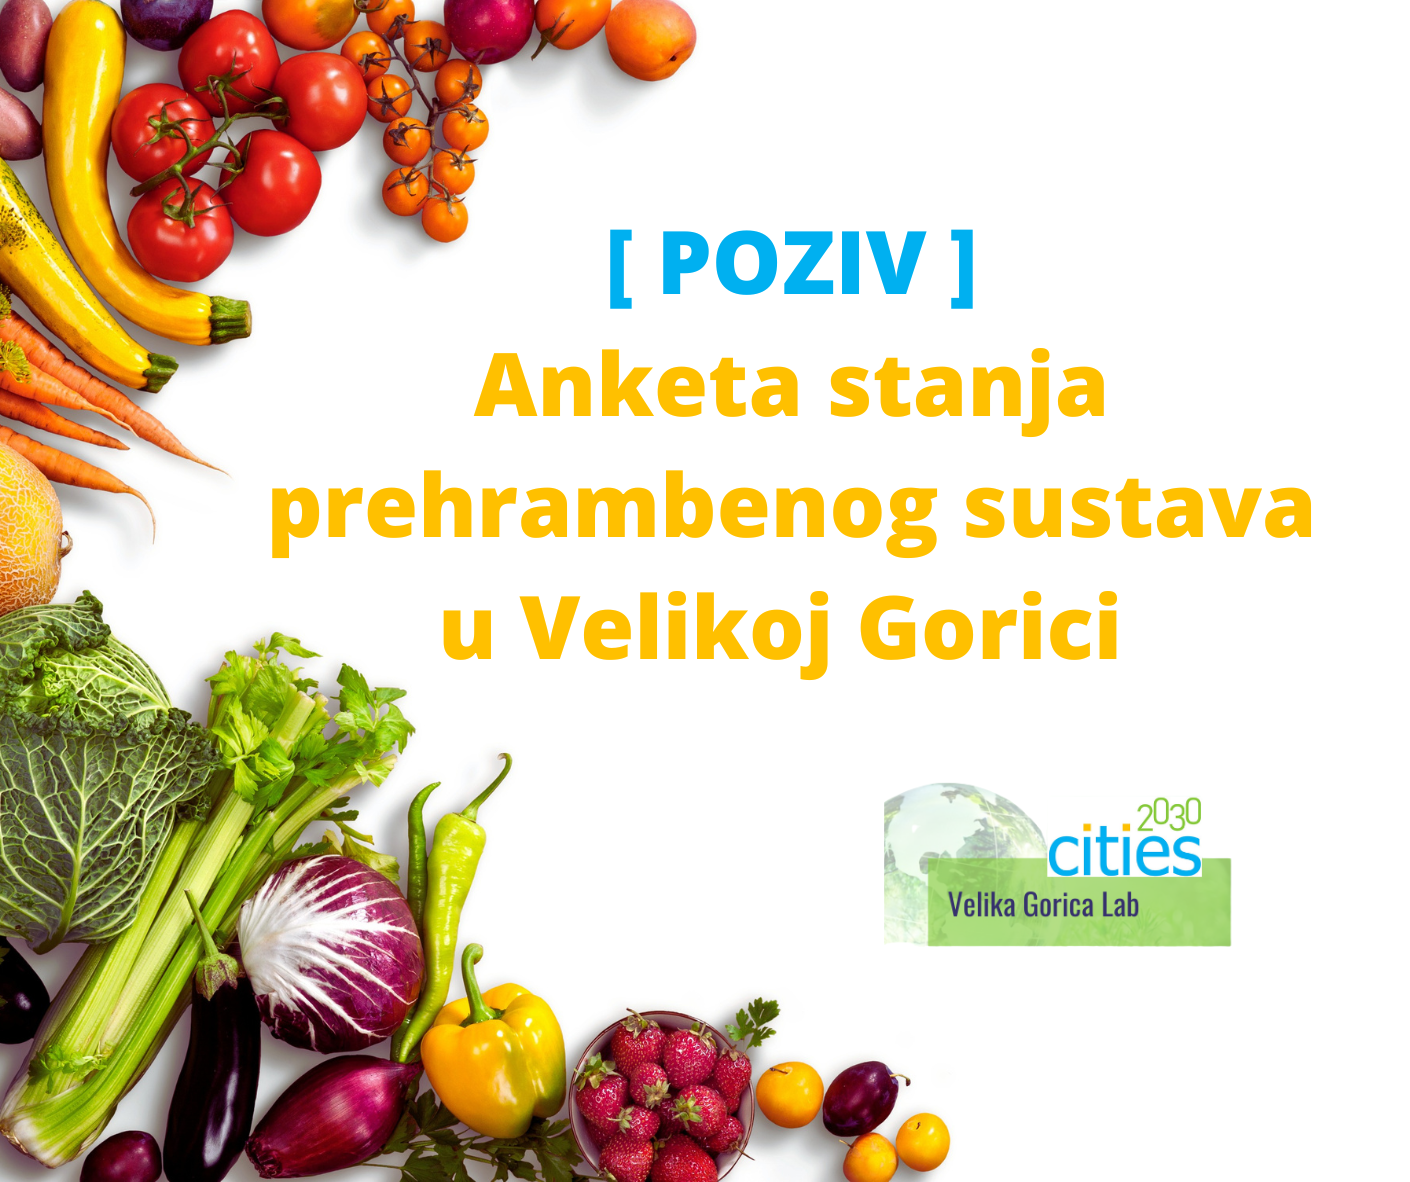 POZIV Anketa stanja prehrambenog sustava u Velikoj Gorici